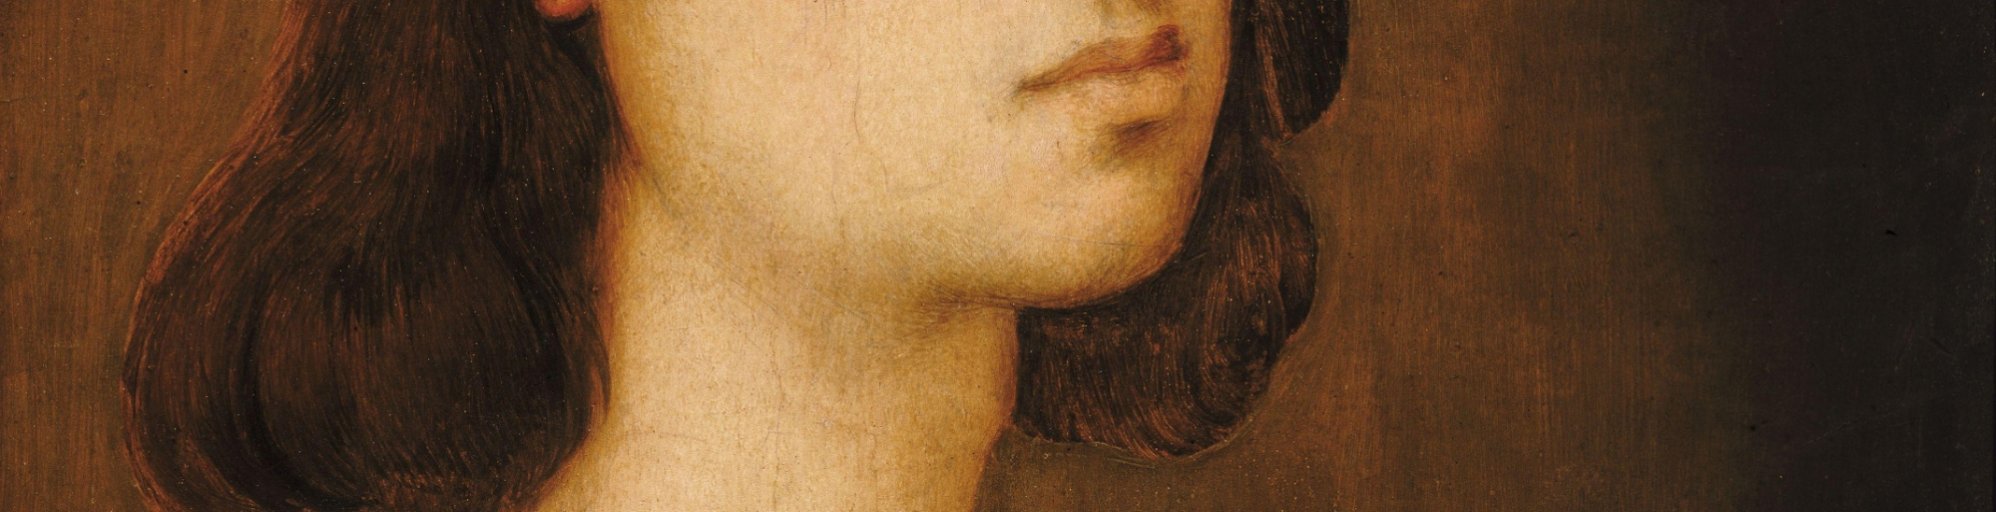 Supuesto autorretrato (1506 aprox.), Galería de los Uffizi, Florencia